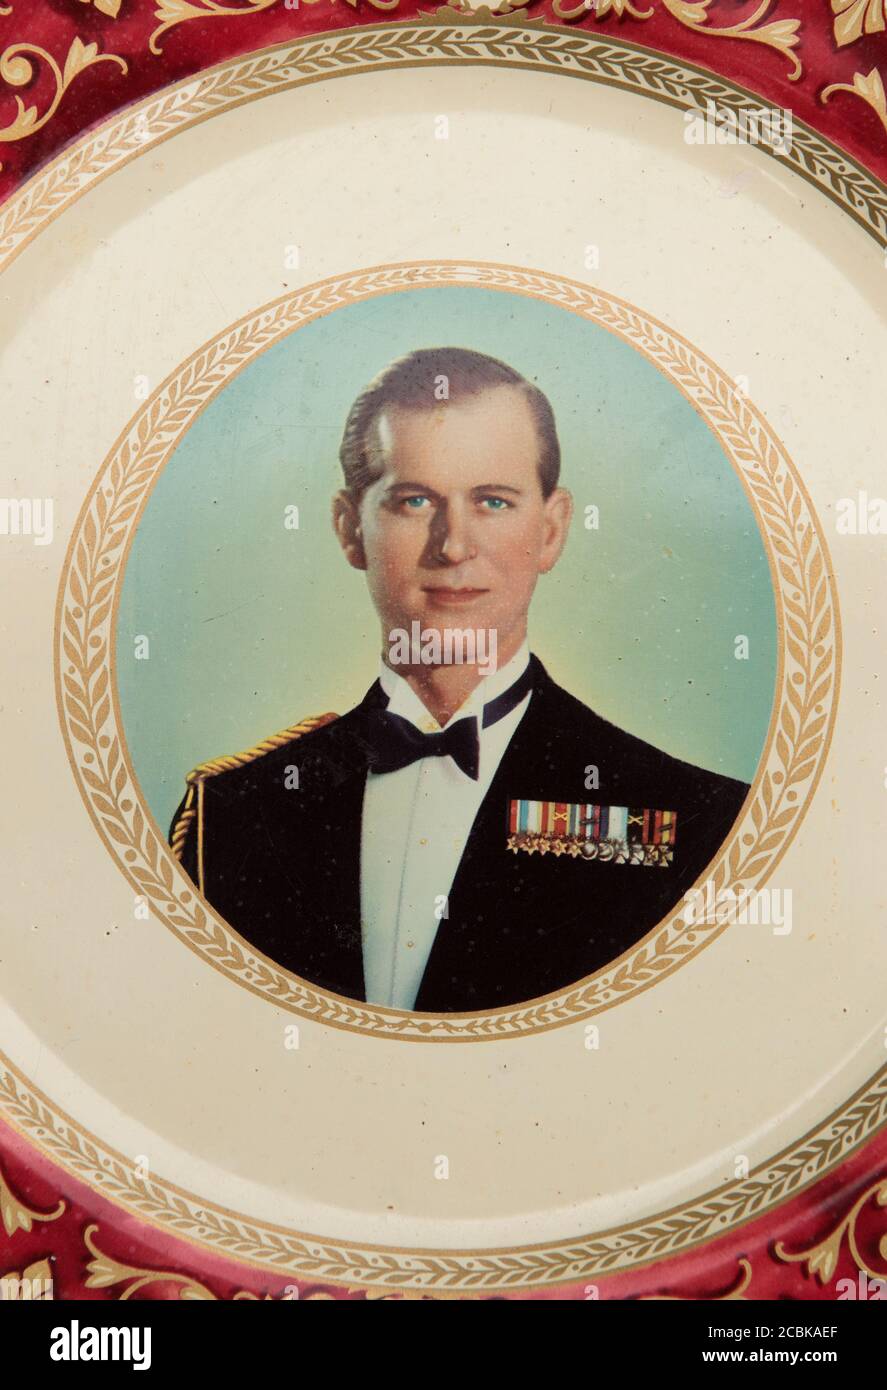 Ritratto del Duca di Edimburgo, su una piastra di vasellame Portland d'epoca ricordo del 2 giugno 1953. HOMER SYKES Foto Stock